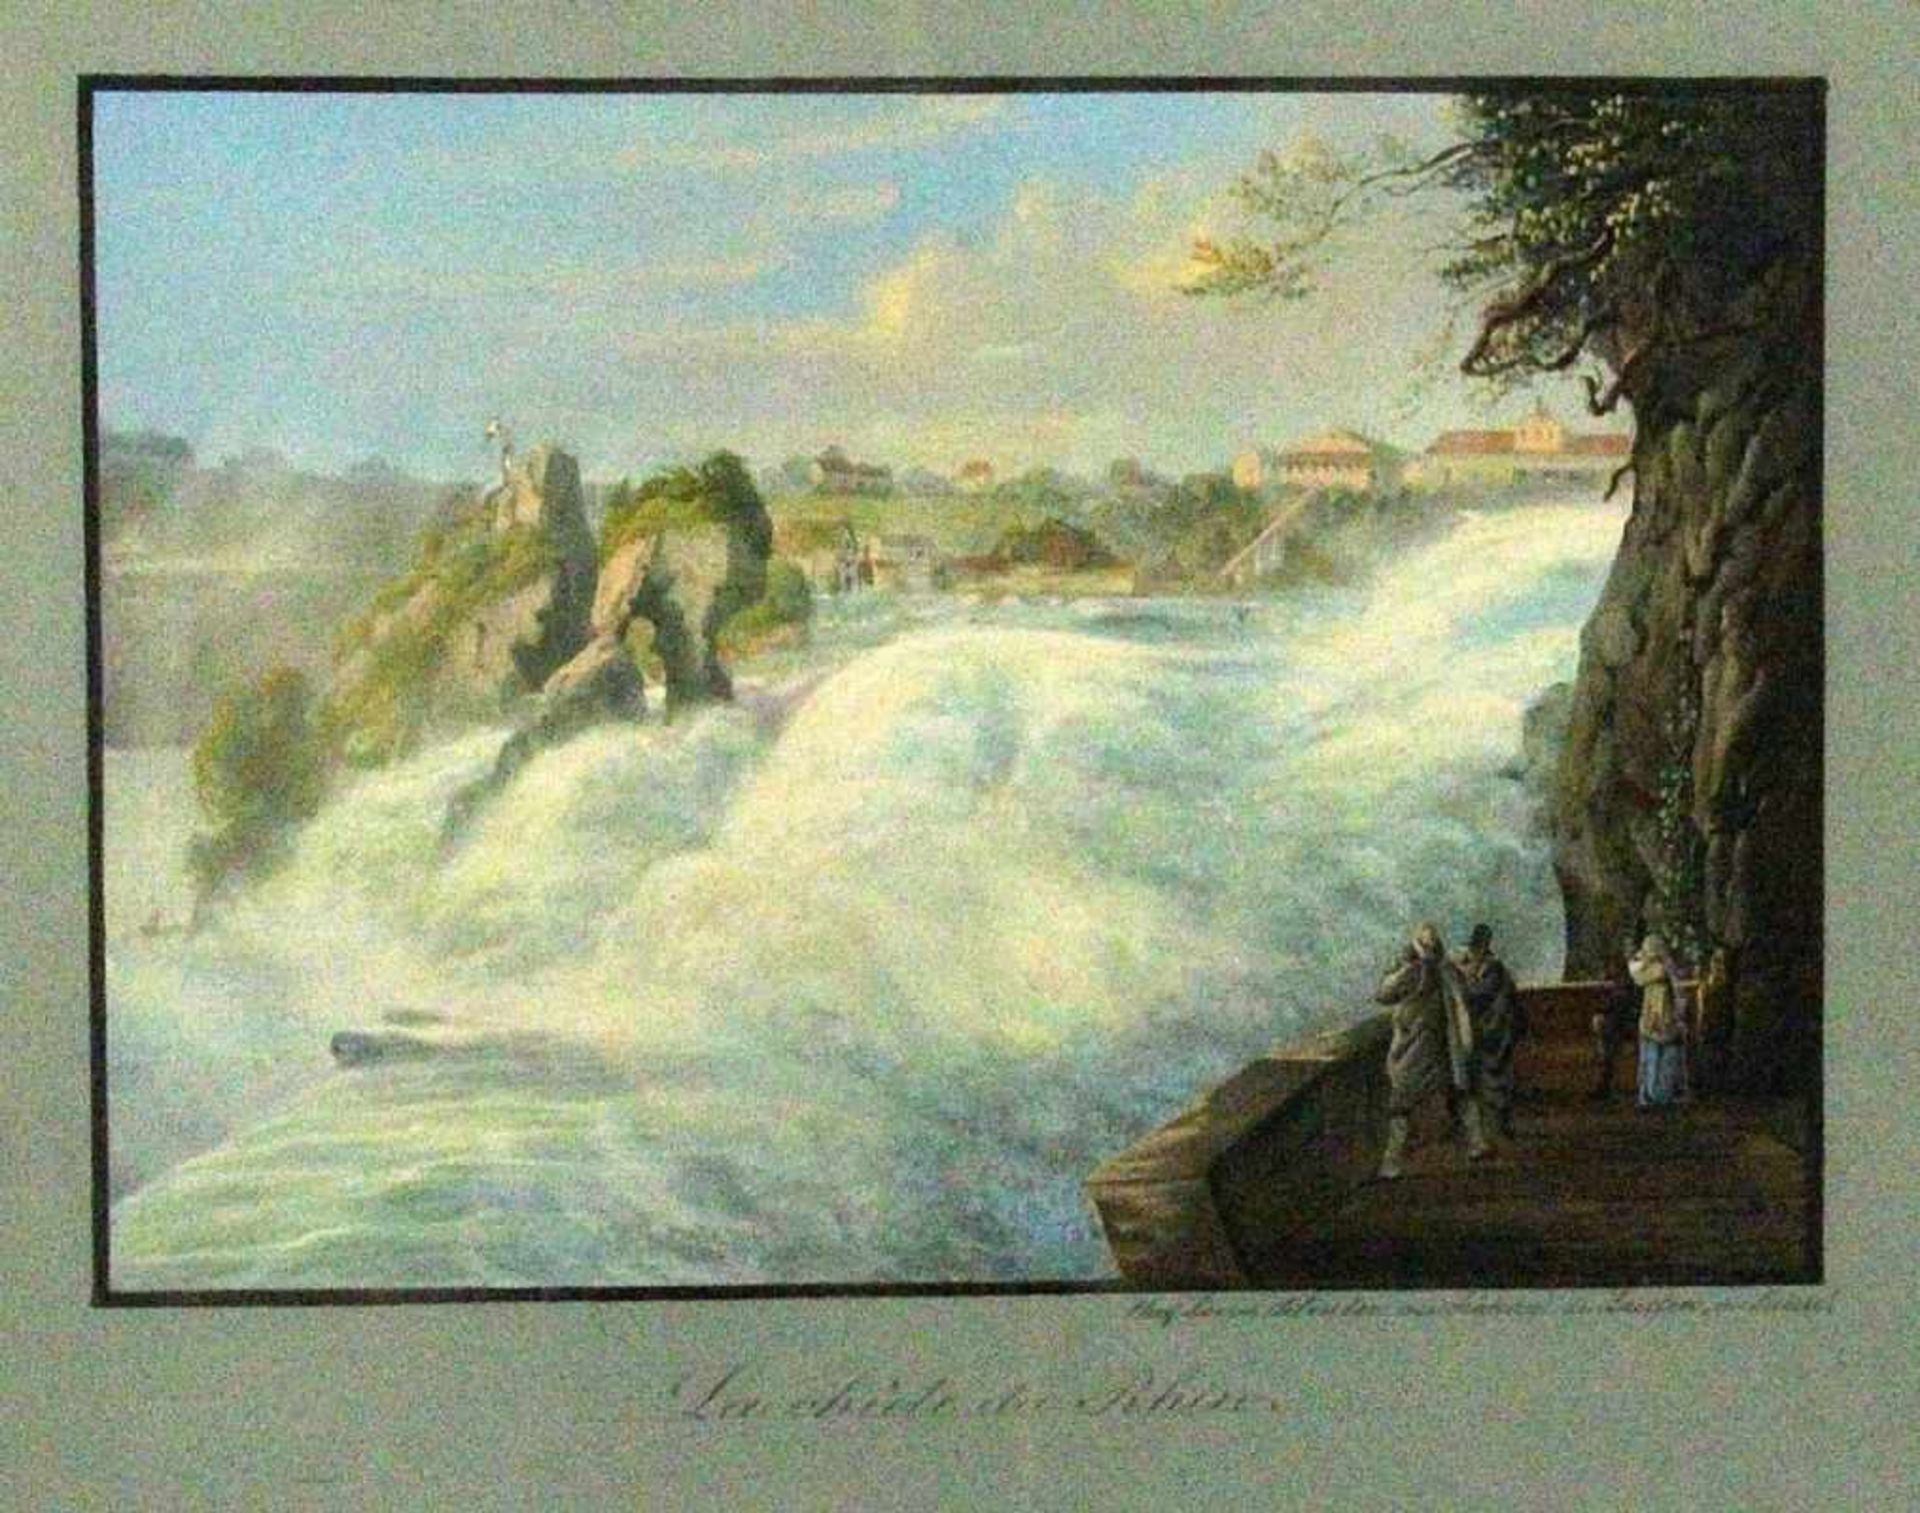 BLEULER, JOHANN LUDWIG (LOUIS)Feuerthalen 1792 - 1850 Laufen-Uhwiesen "La chûte du Rhin" (